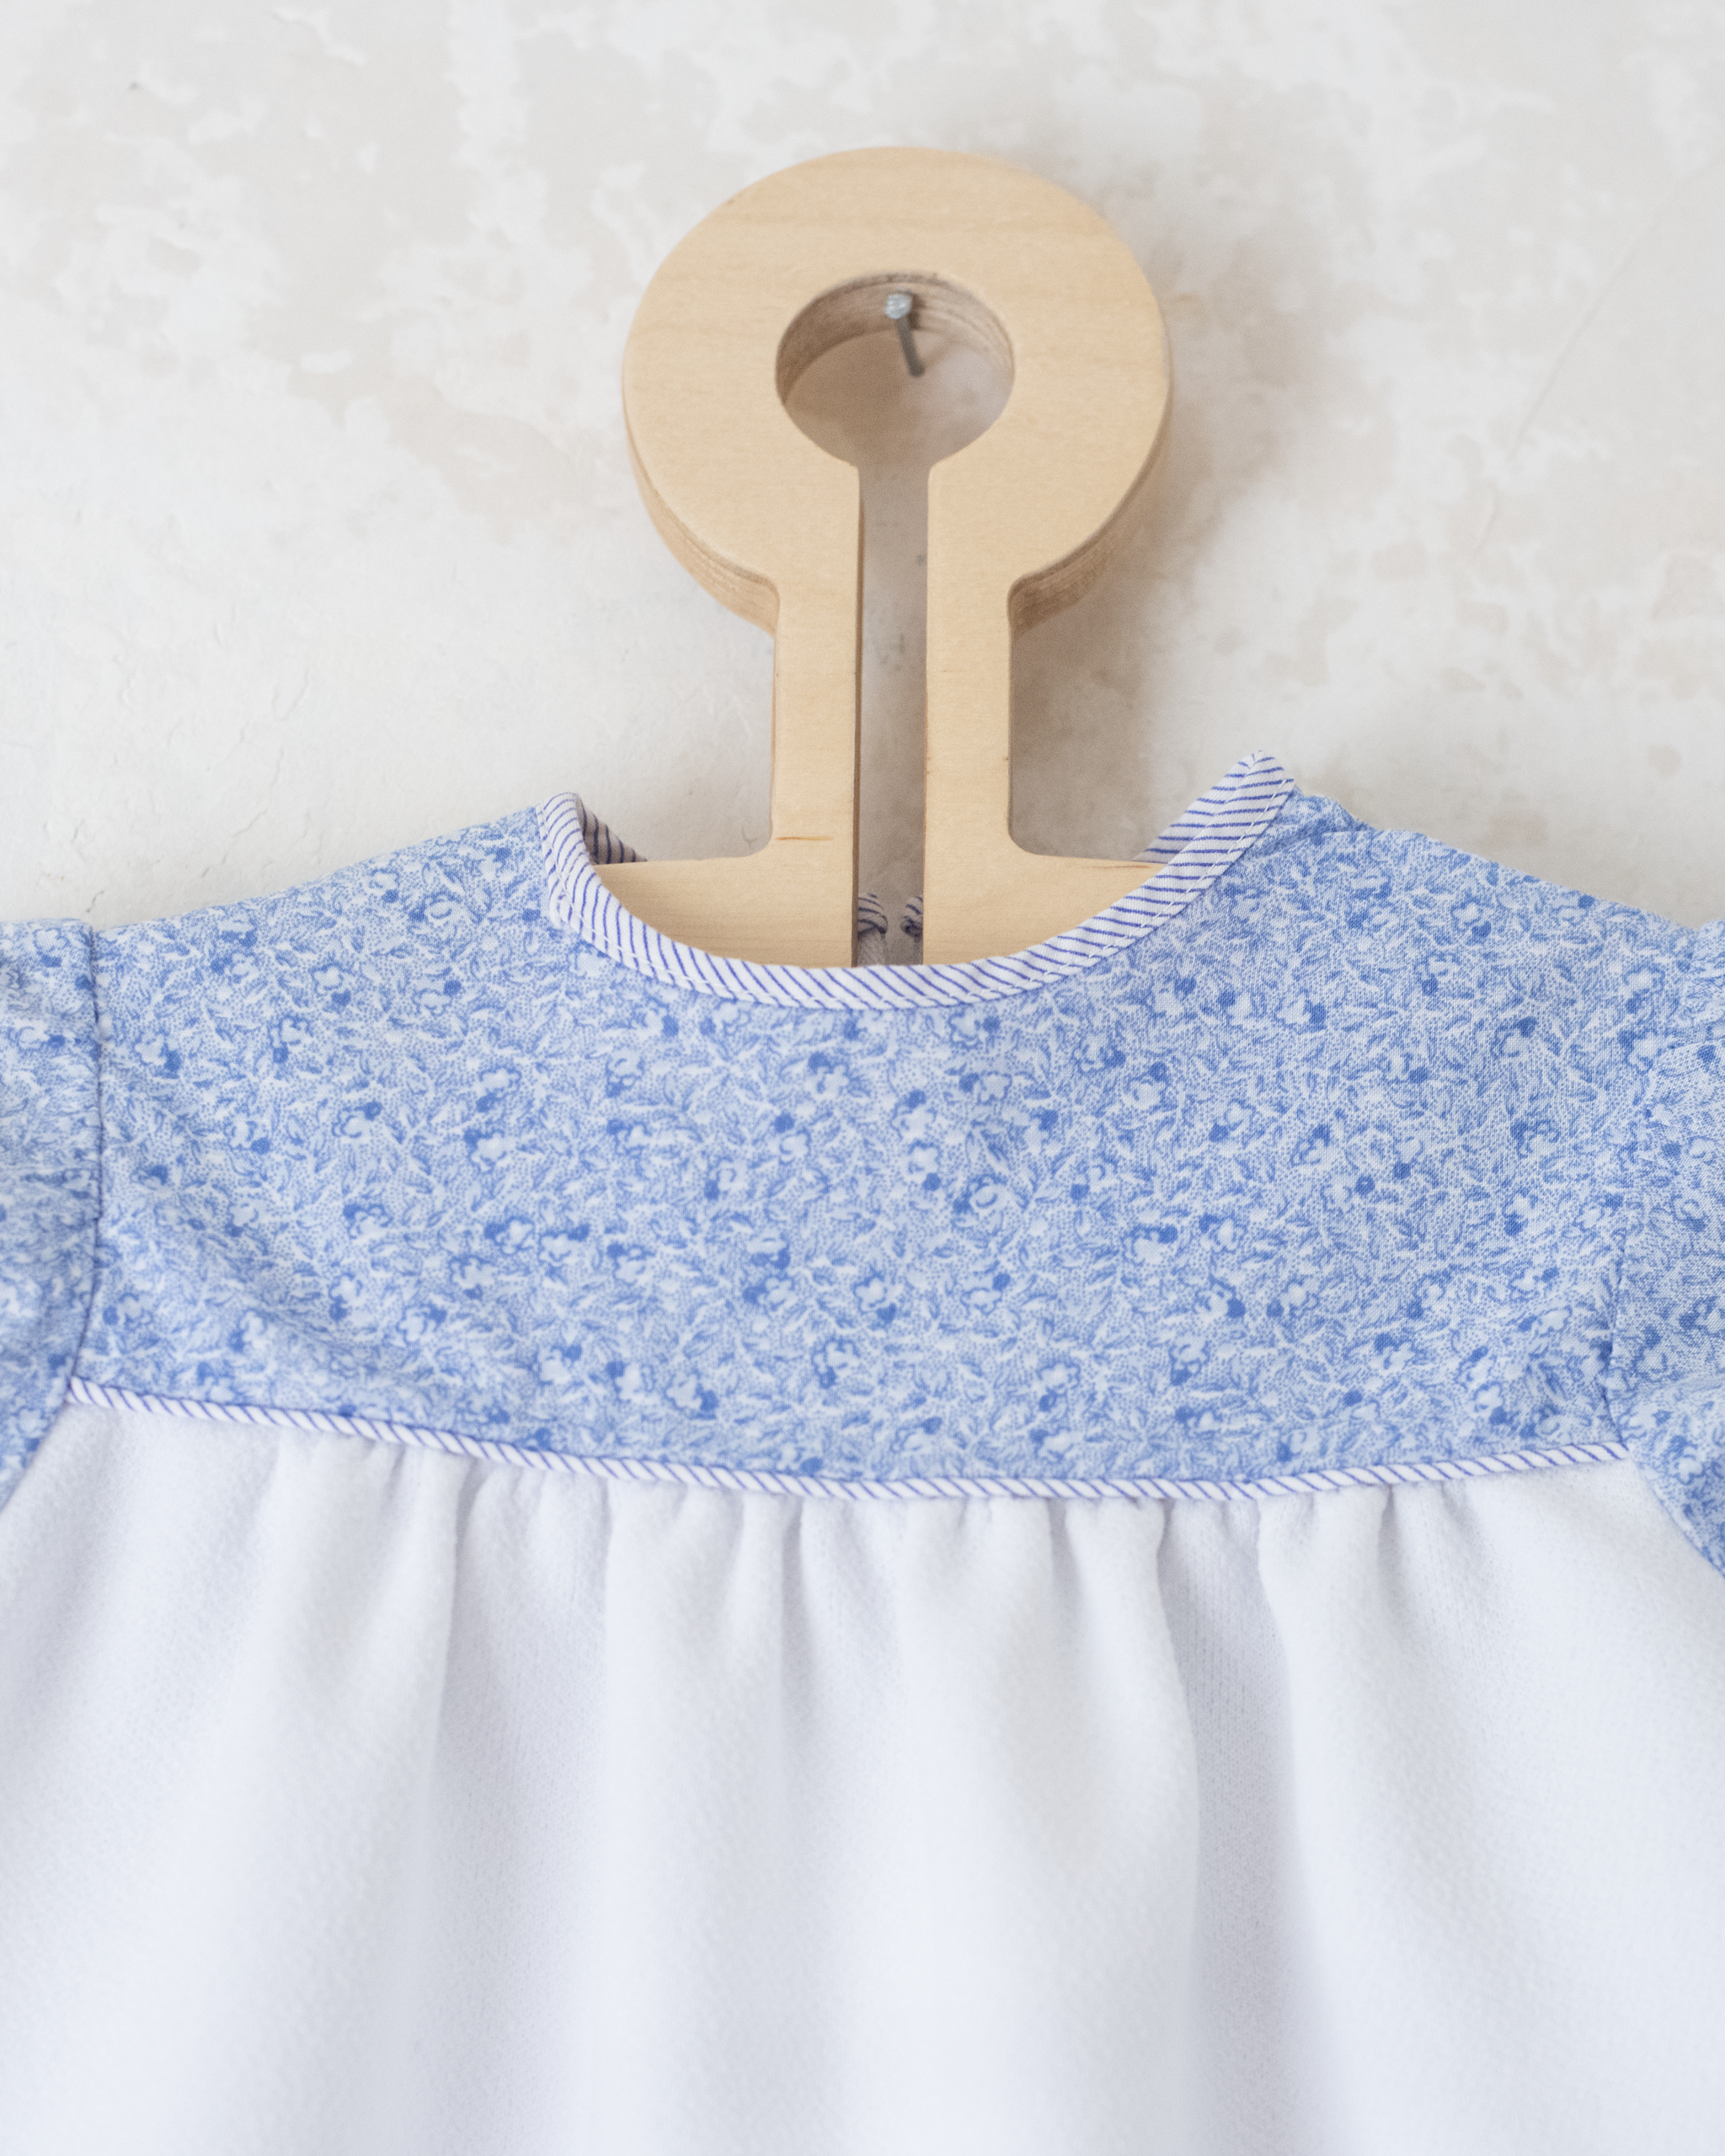 שמלה לבנה עם ורד כחול | 9-12 חודשים